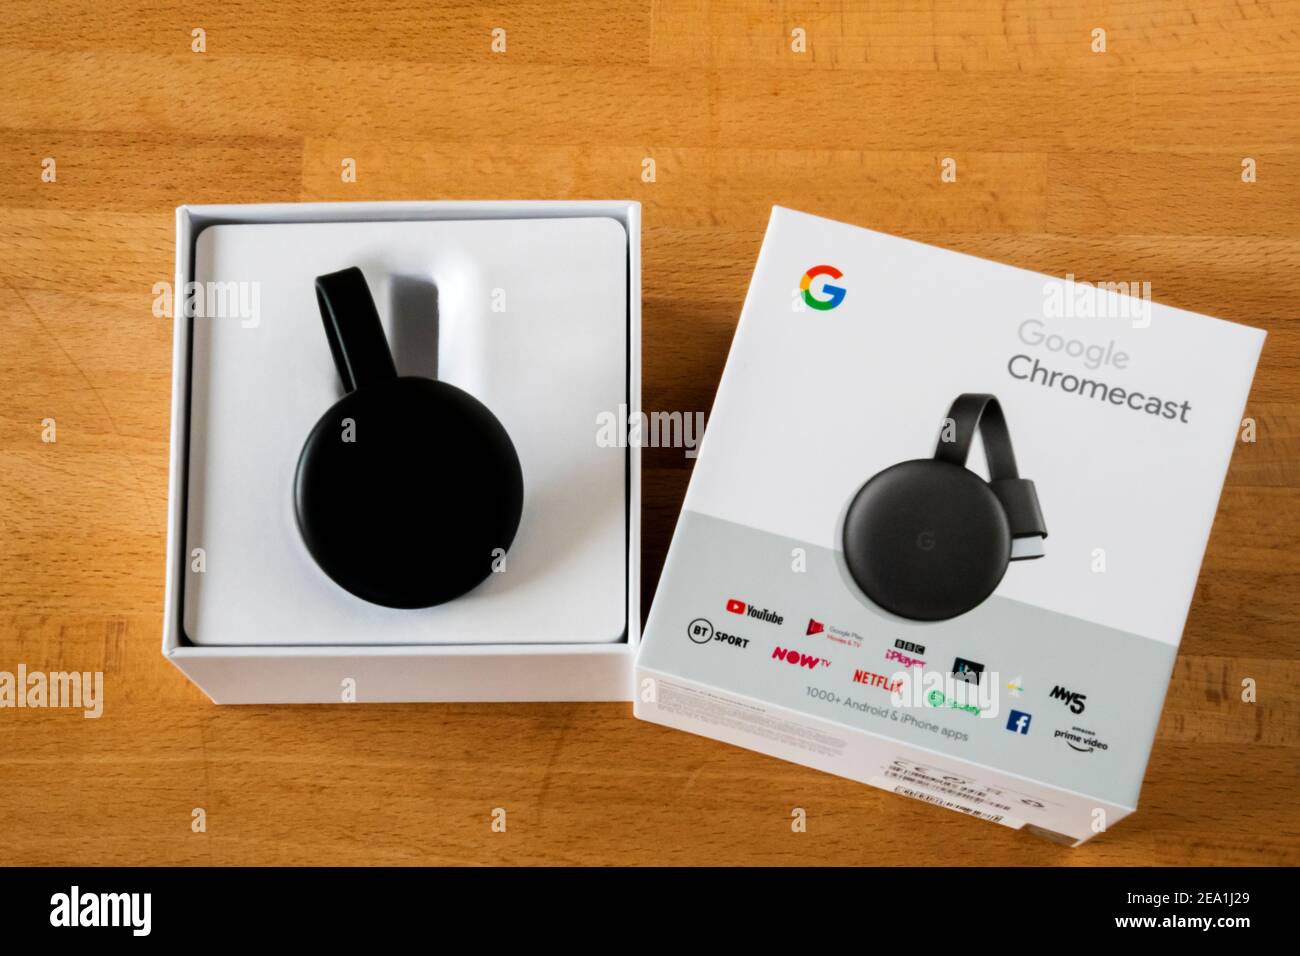 Un dongle Google Chromecast nella confezione originale. Utilizzato per riprodurre contenuti audiovisivi in streaming su Internet. Foto Stock